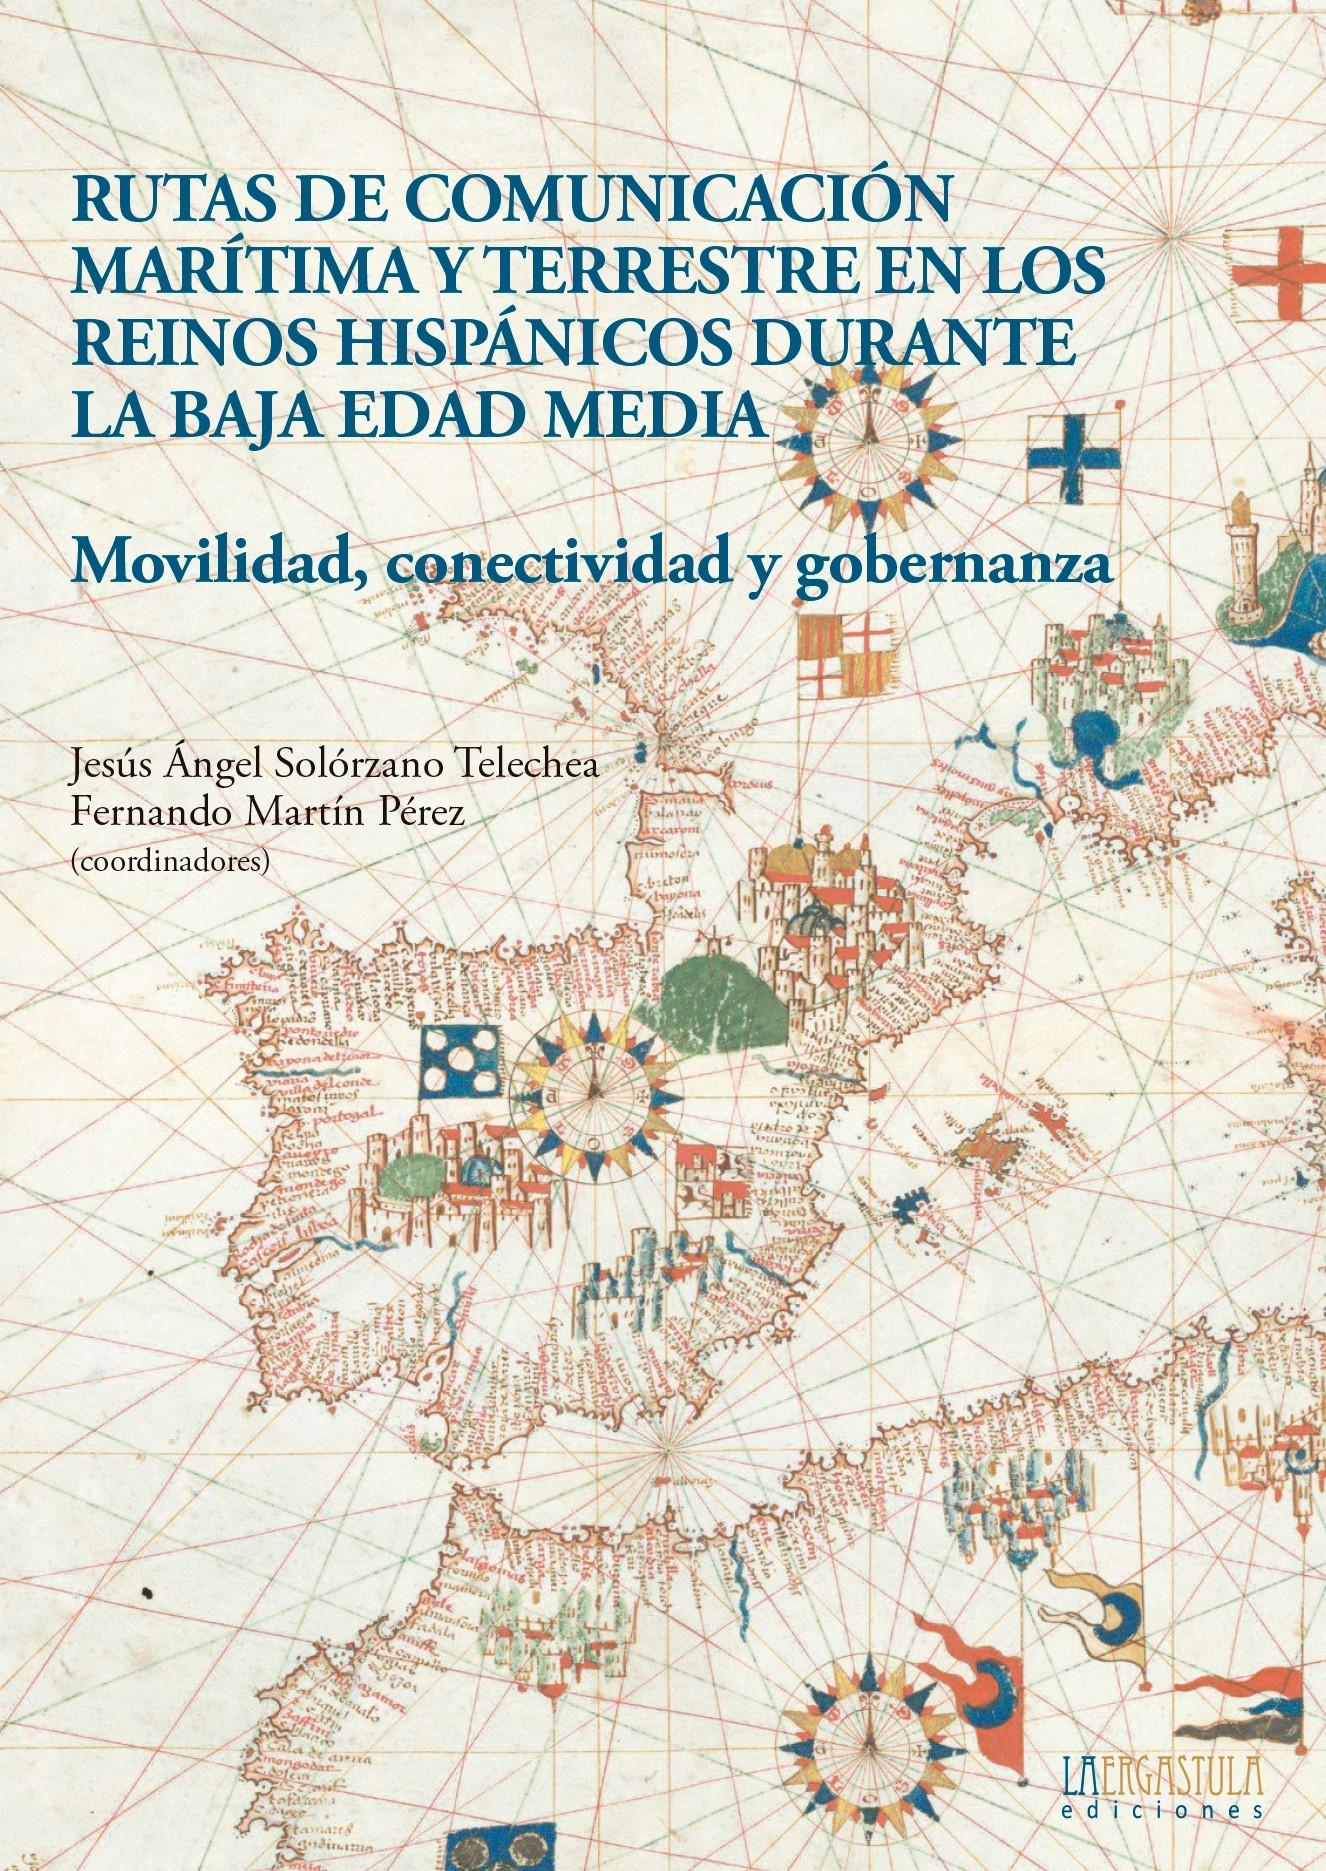 Rutas de comunicación marítima y terrestre en los reinos hispánicos durante la Baja Edad Media "Movilidad, conectividad y gobernanza". 